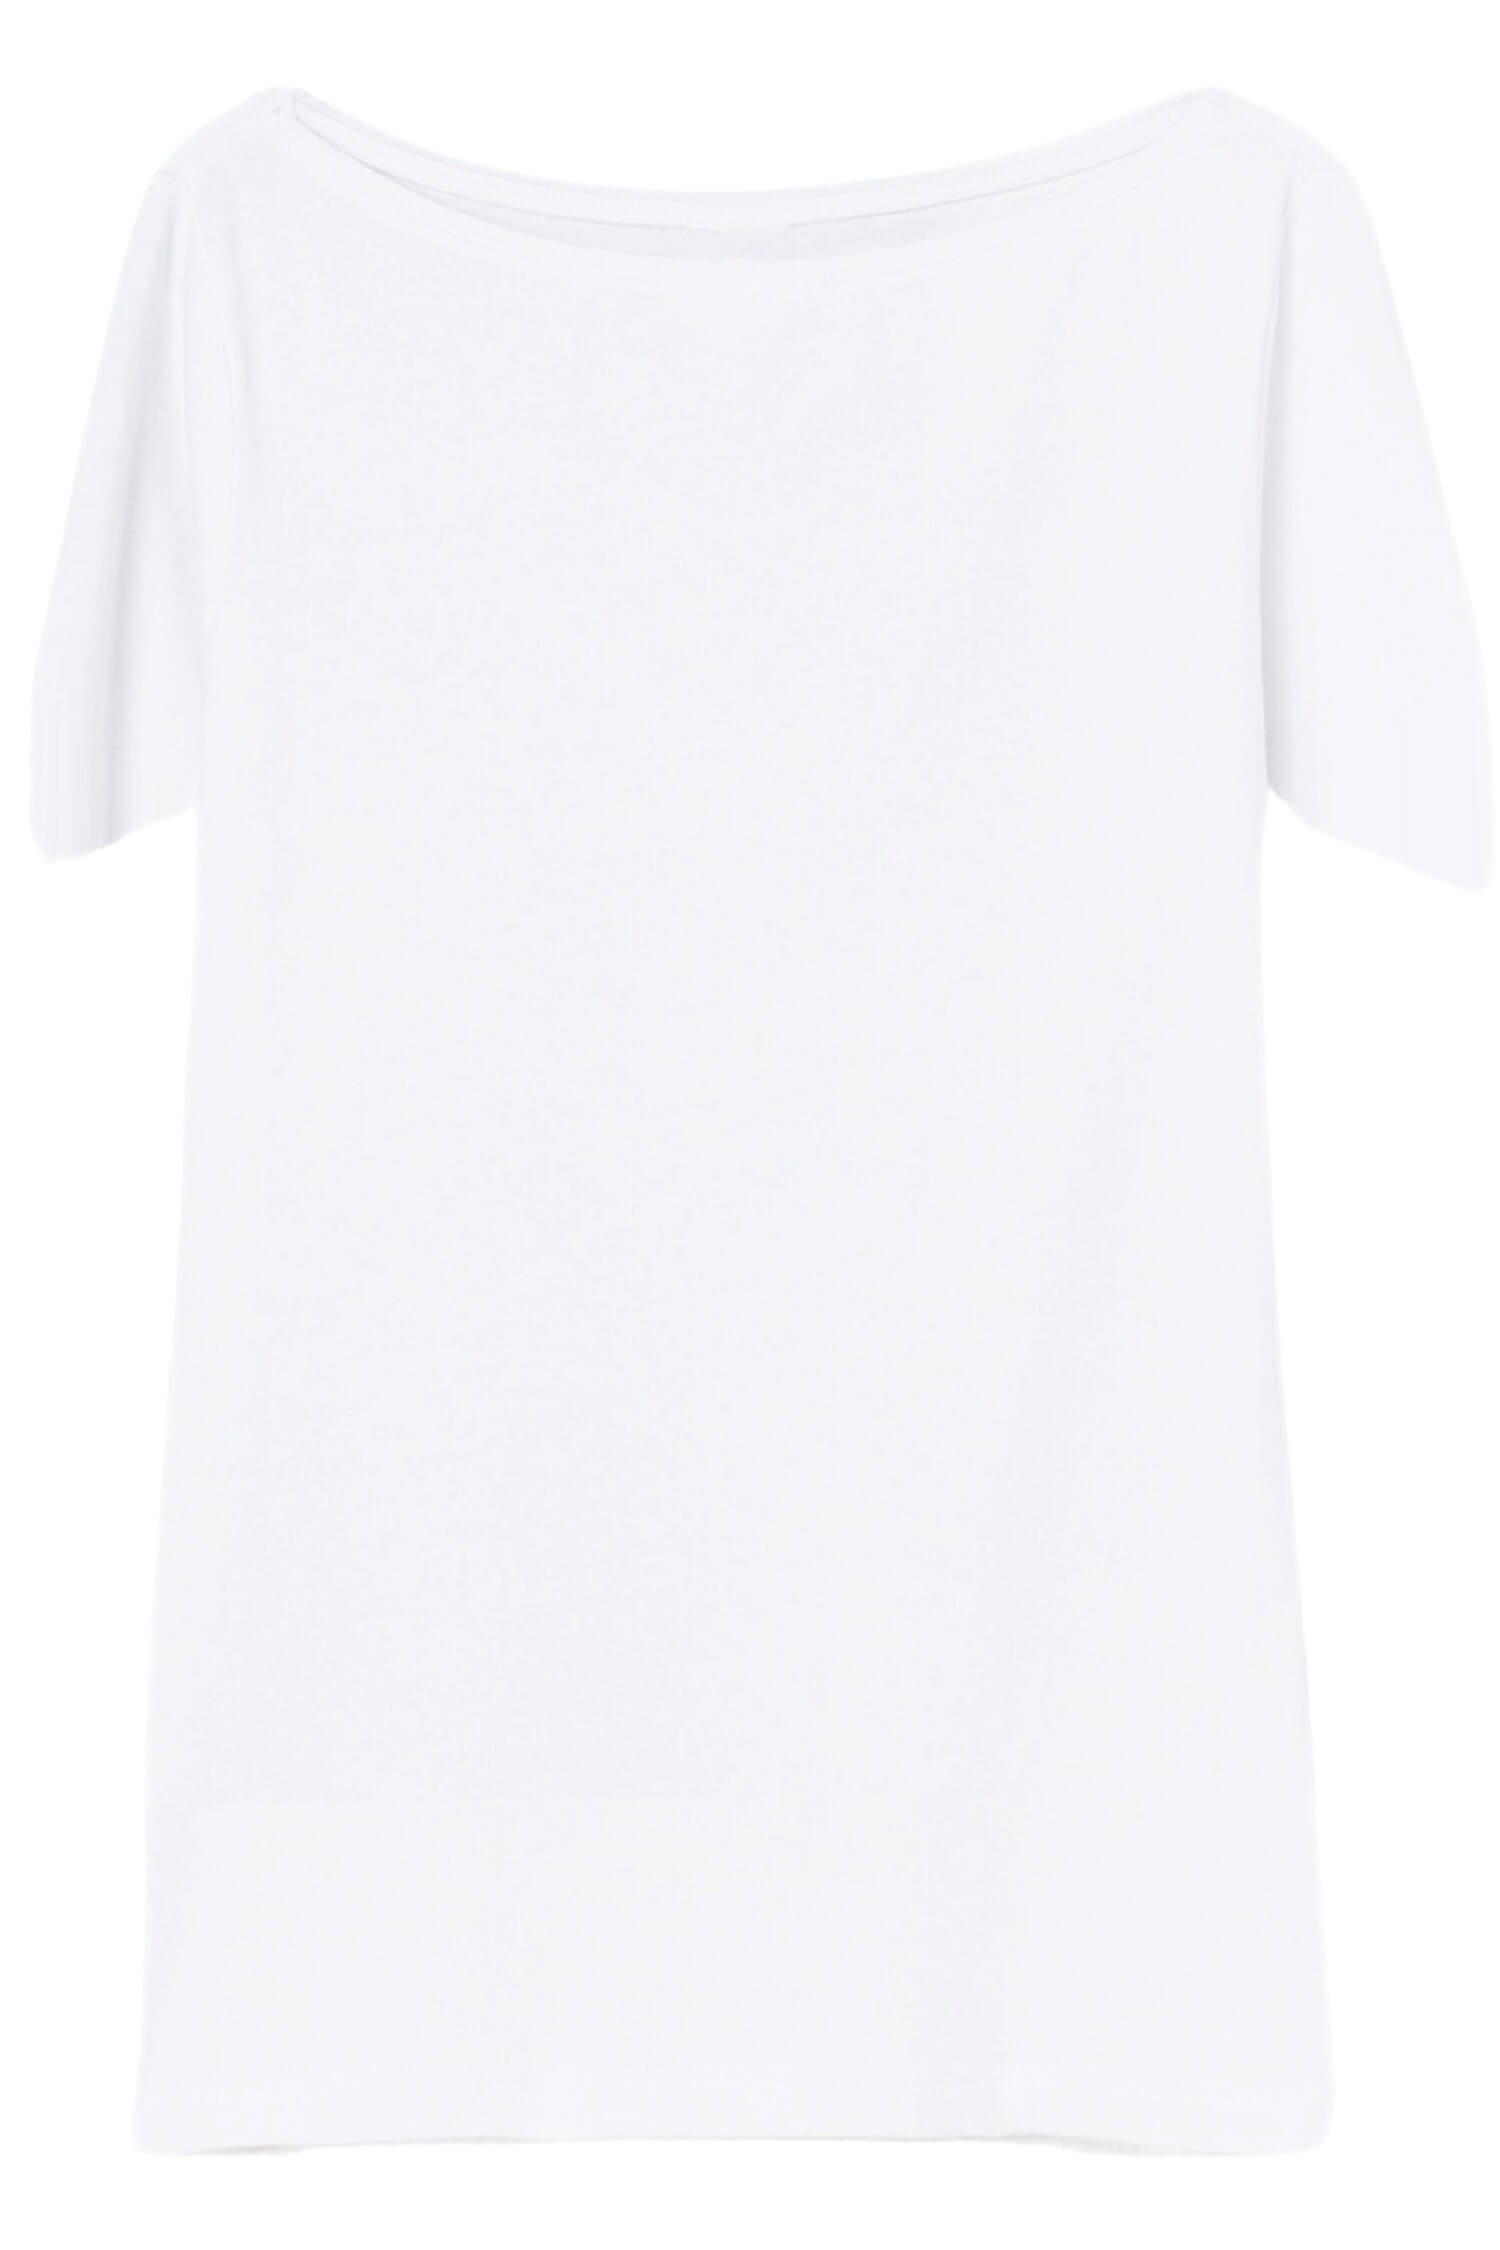 Danica dámské tričko s krátkým rukávem TSK-1005 bílá XL